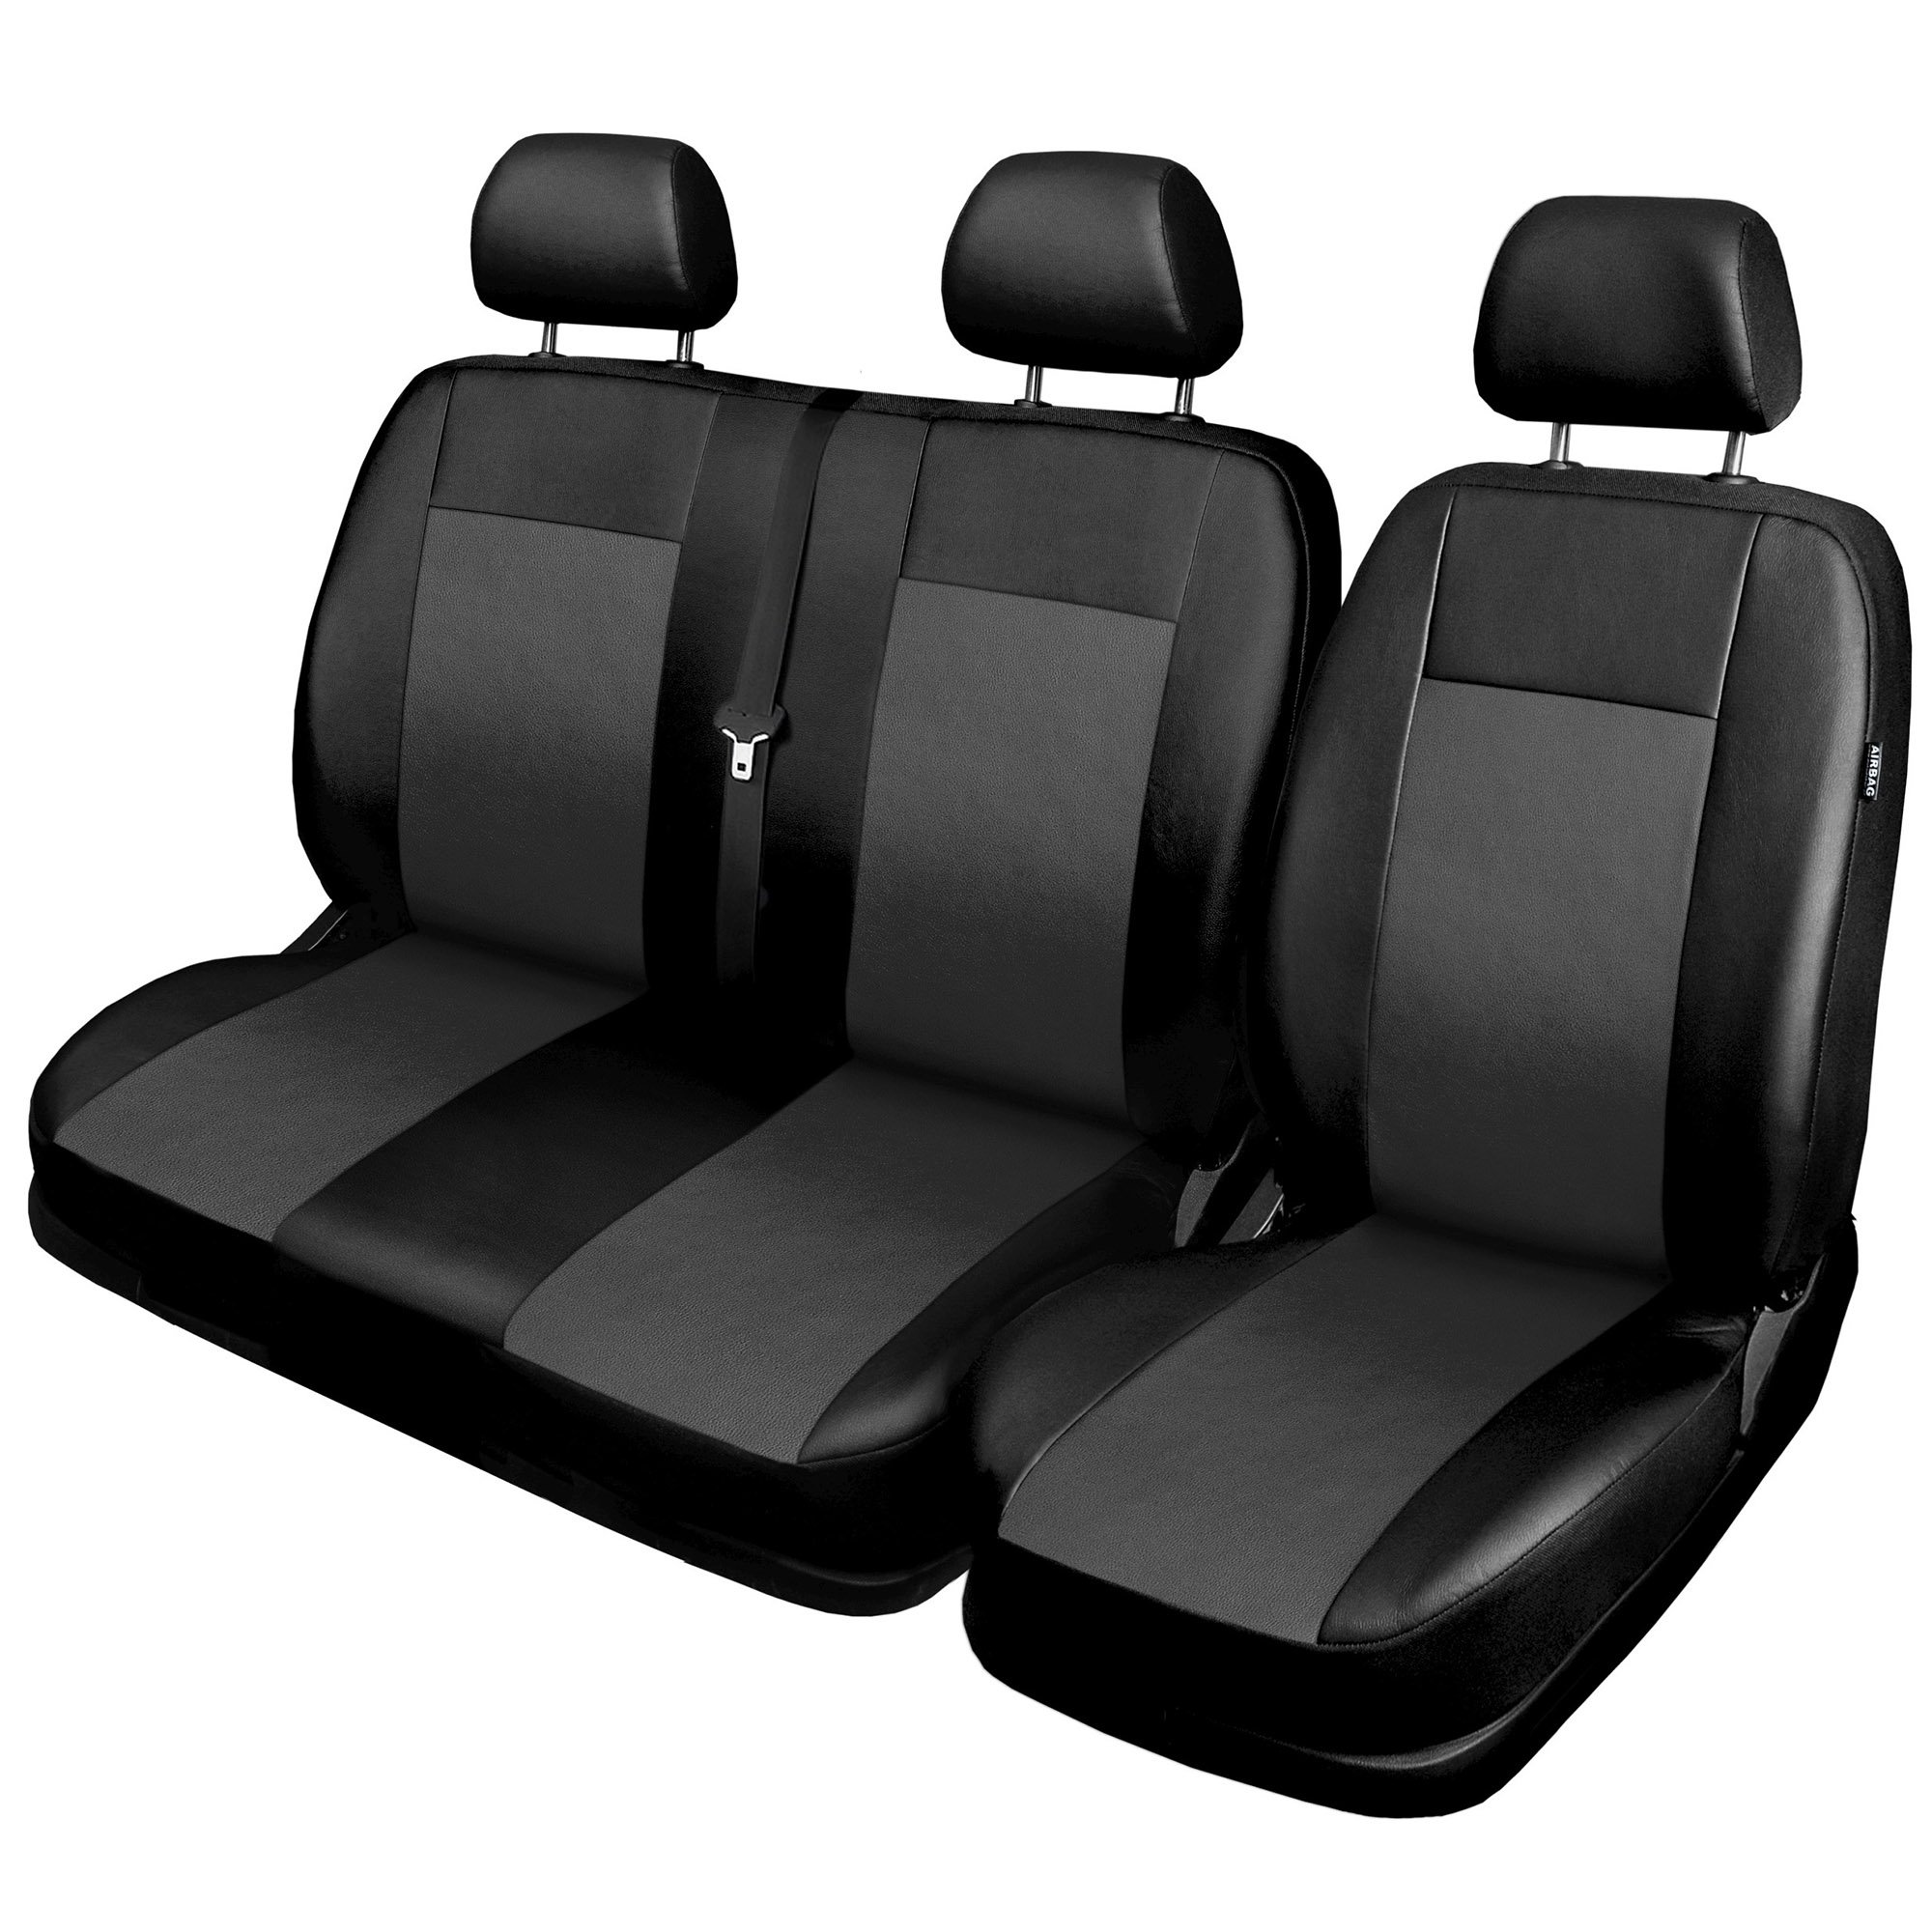 GSC Sitzbezüge Komplettset 1+2 Sitze Autositzbezug Universal, Comfort, kompatibel mit Mercedes Vito